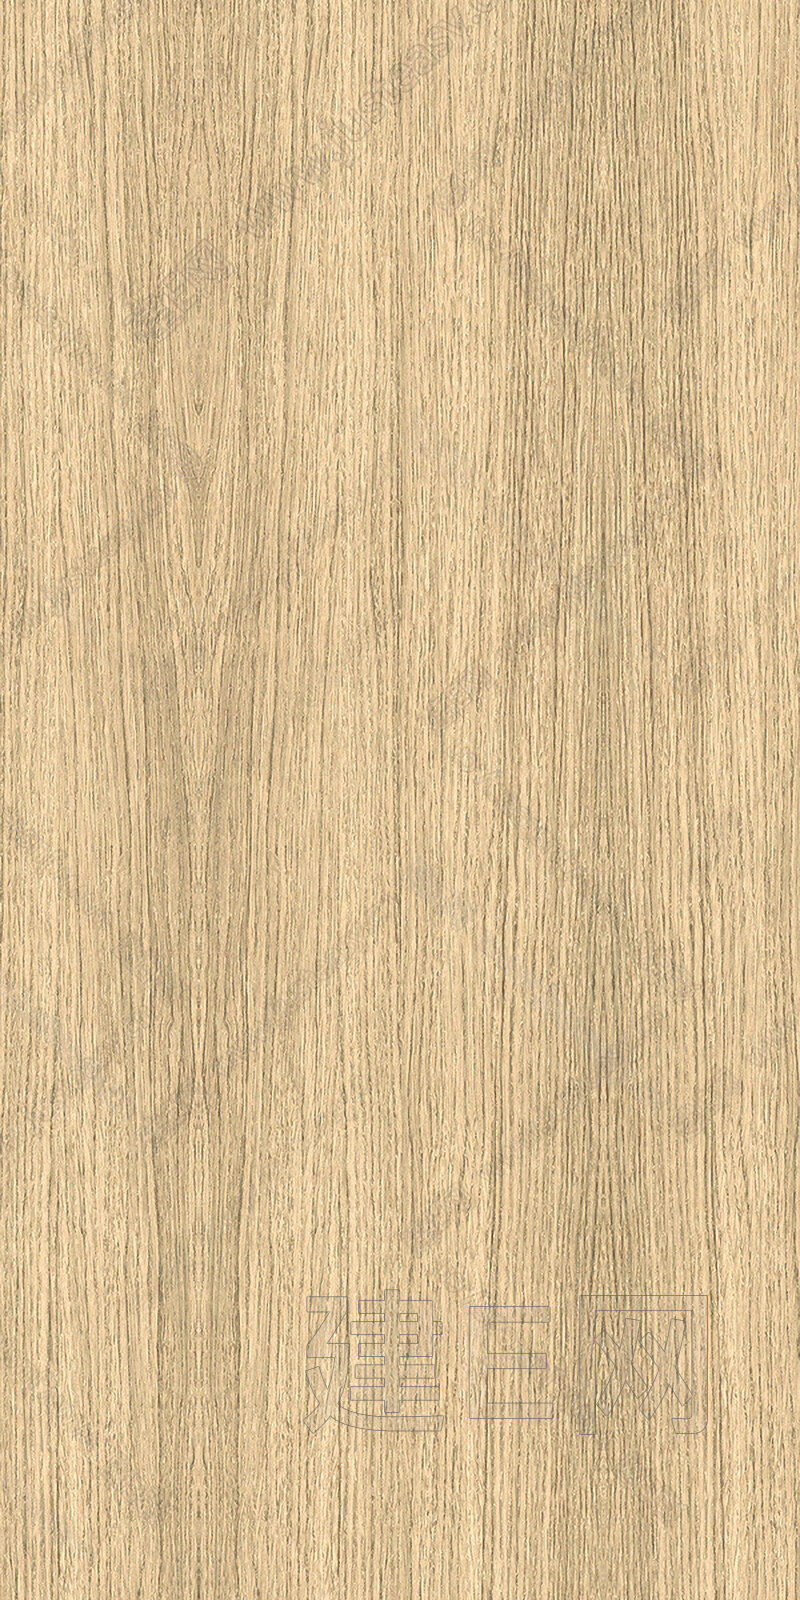 浅色橡木木纹木饰面3d贴图